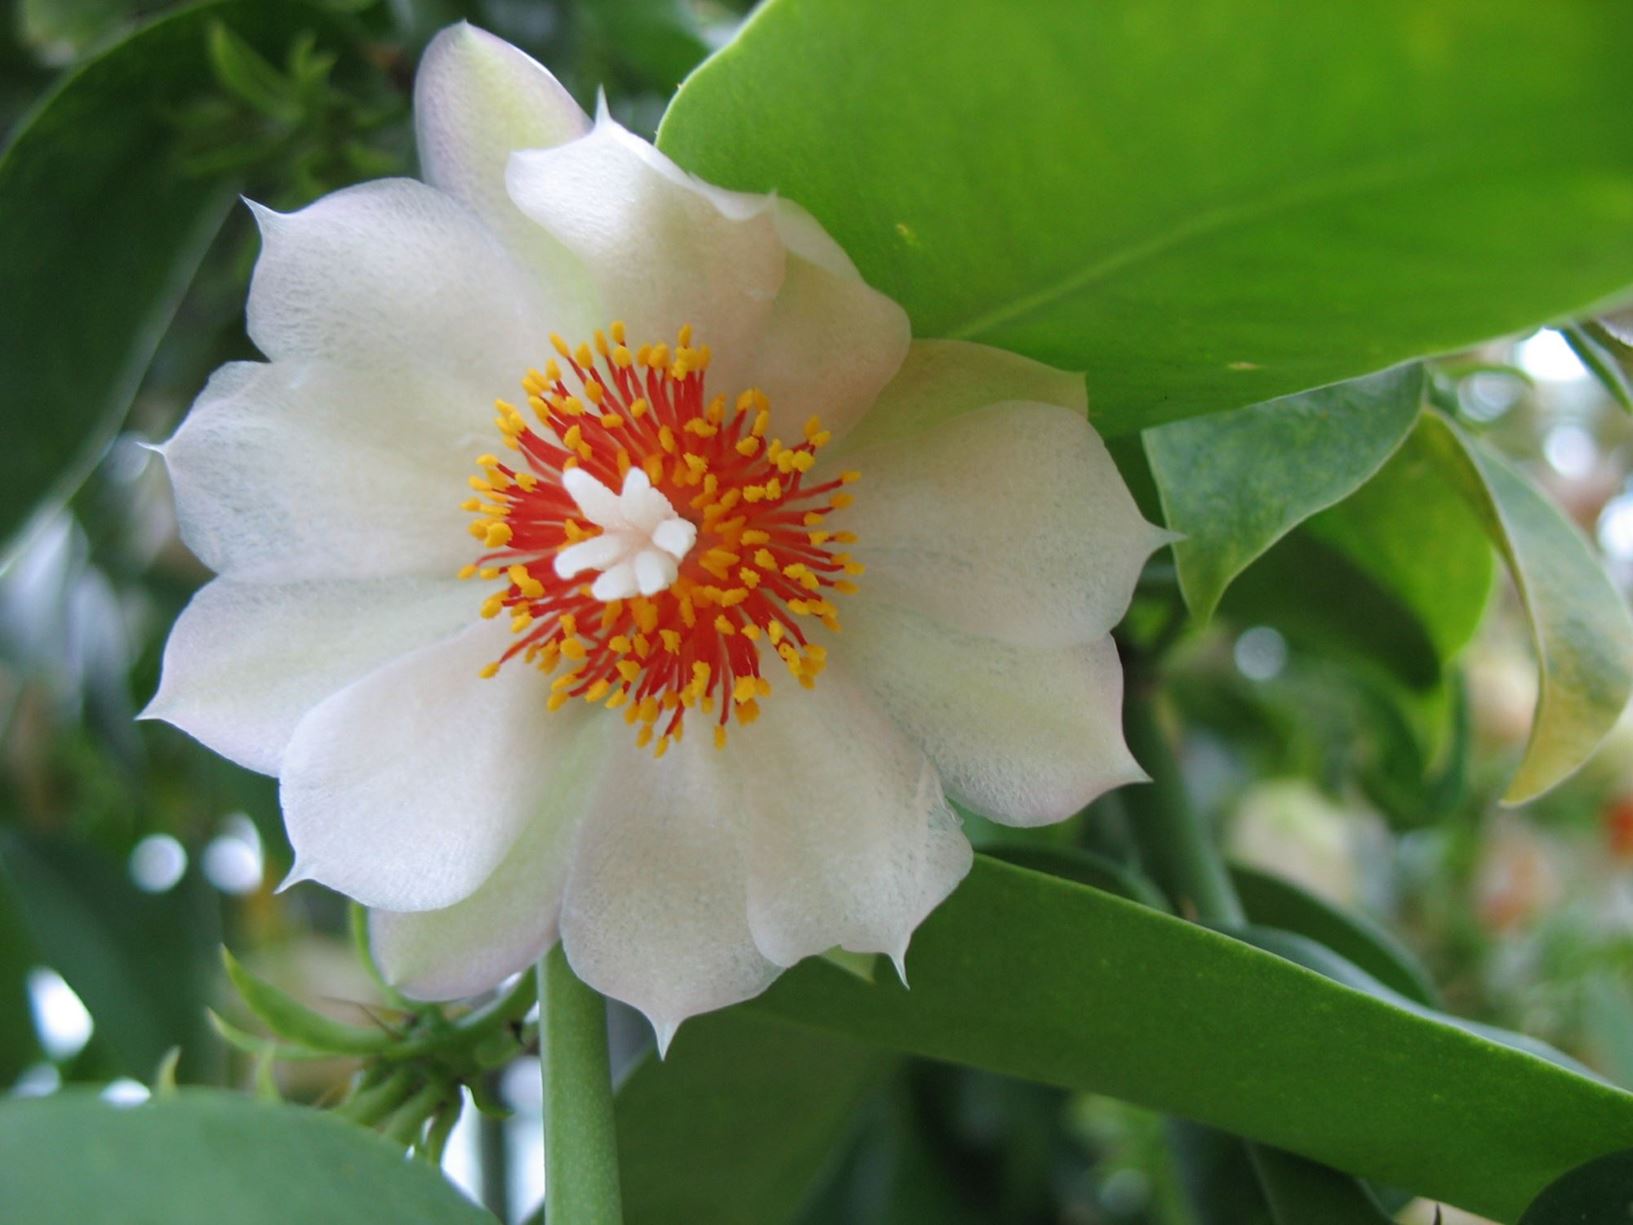 Pereskia aculeata - Barbados-Stachelbeere, Barbados gooseberry